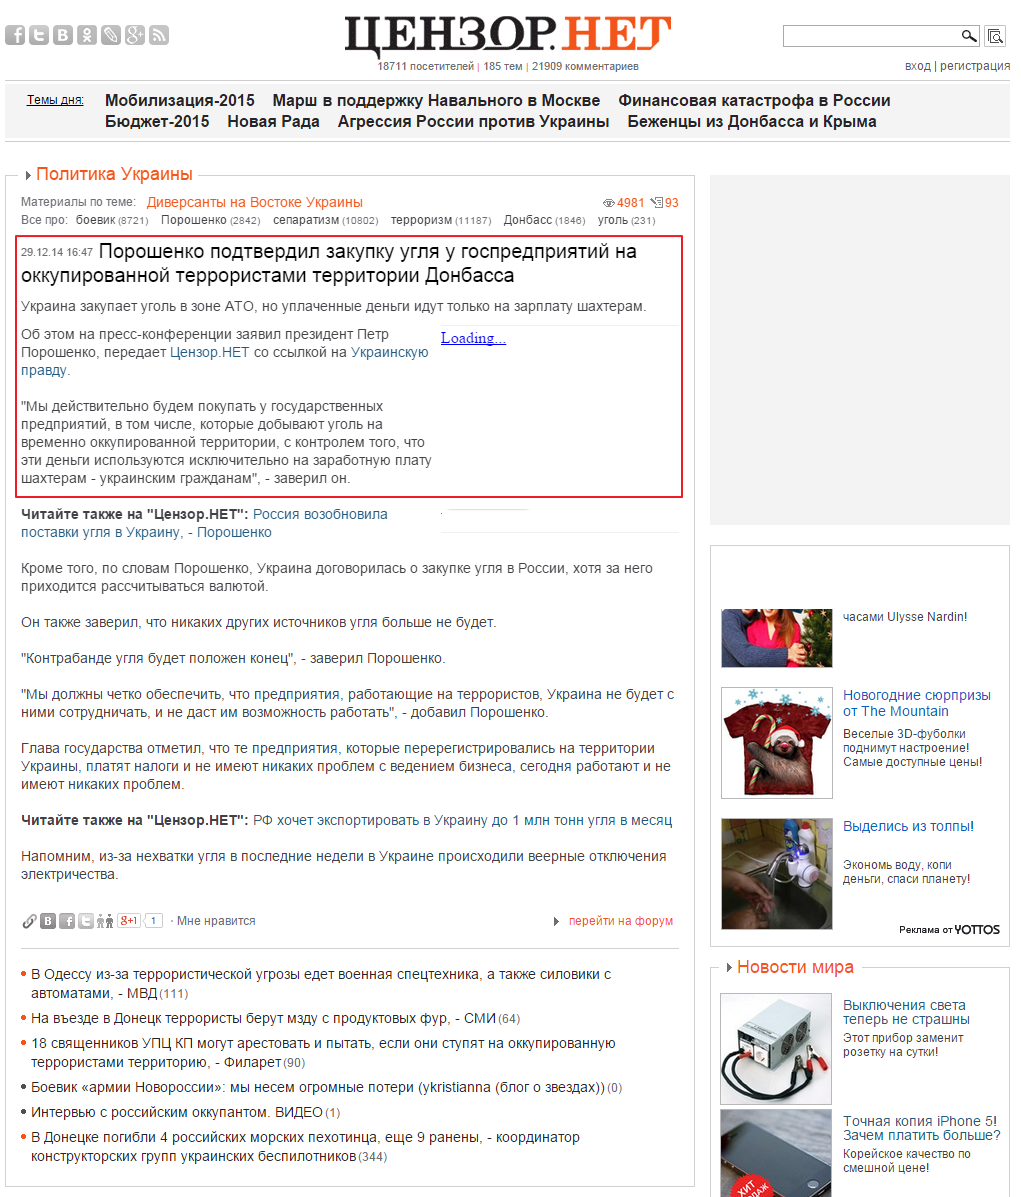 http://censor.net.ua/news/318514/poroshenko_podtverdil_zakupku_uglya_u_gospredpriyatiyi_na_okkupirovannoyi_terroristami_territorii_donbassa